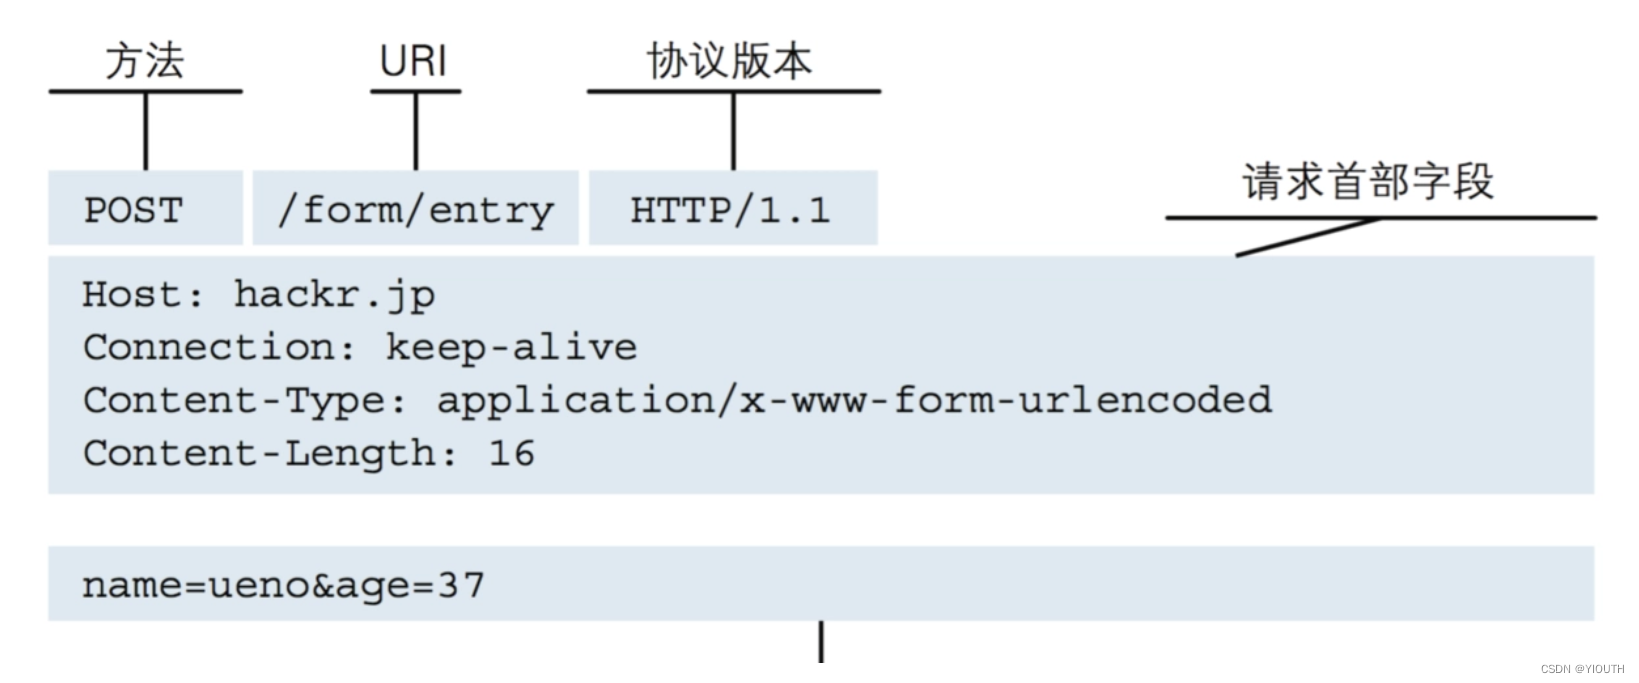 【HTTP协议】了解http需要学习哪些内容